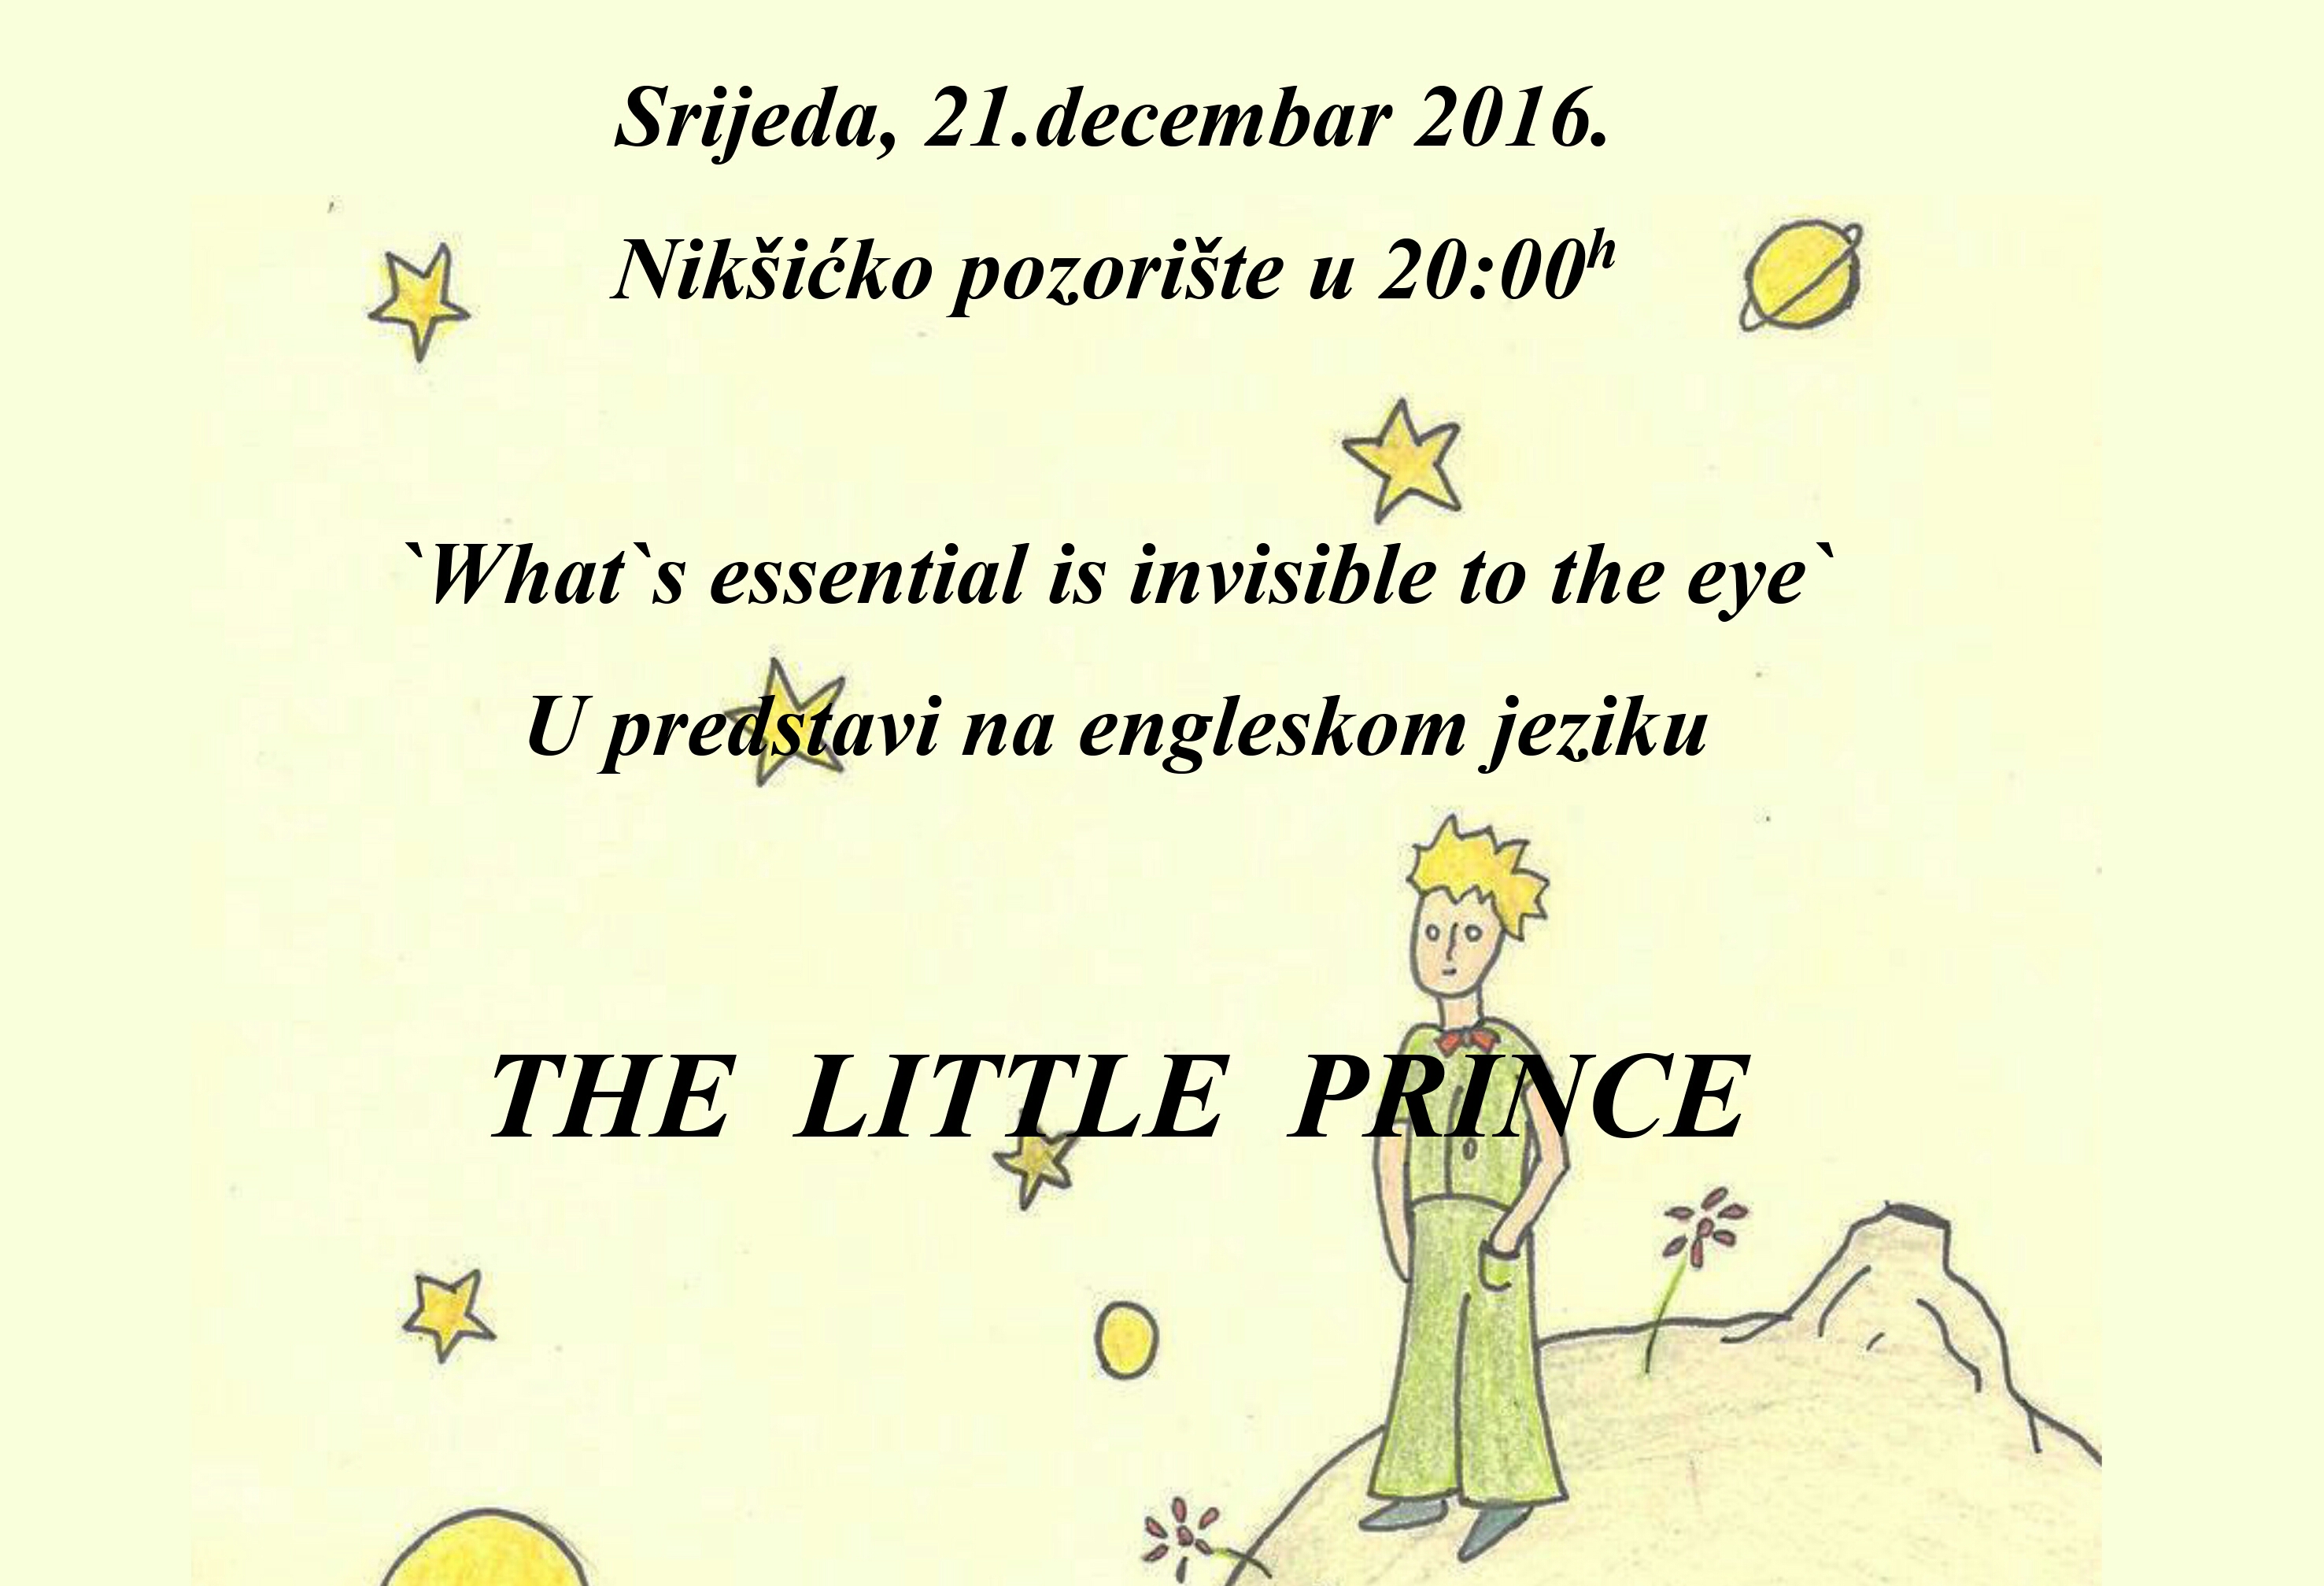 Gimnazijalci izvode predstavu Mali princ, na engleskom jeziku